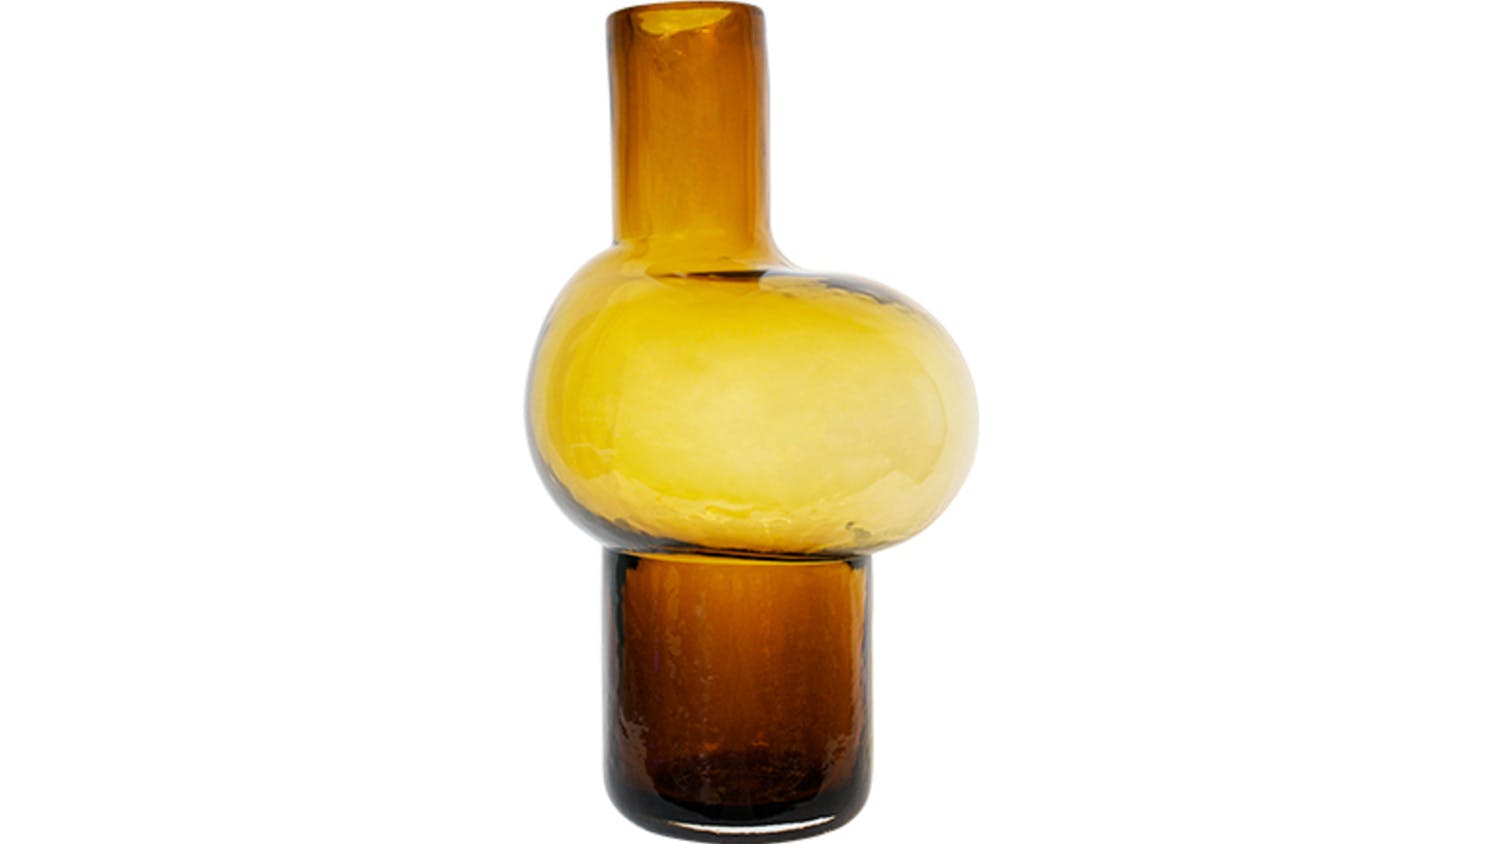 Clara Glass 22.5cm Vase